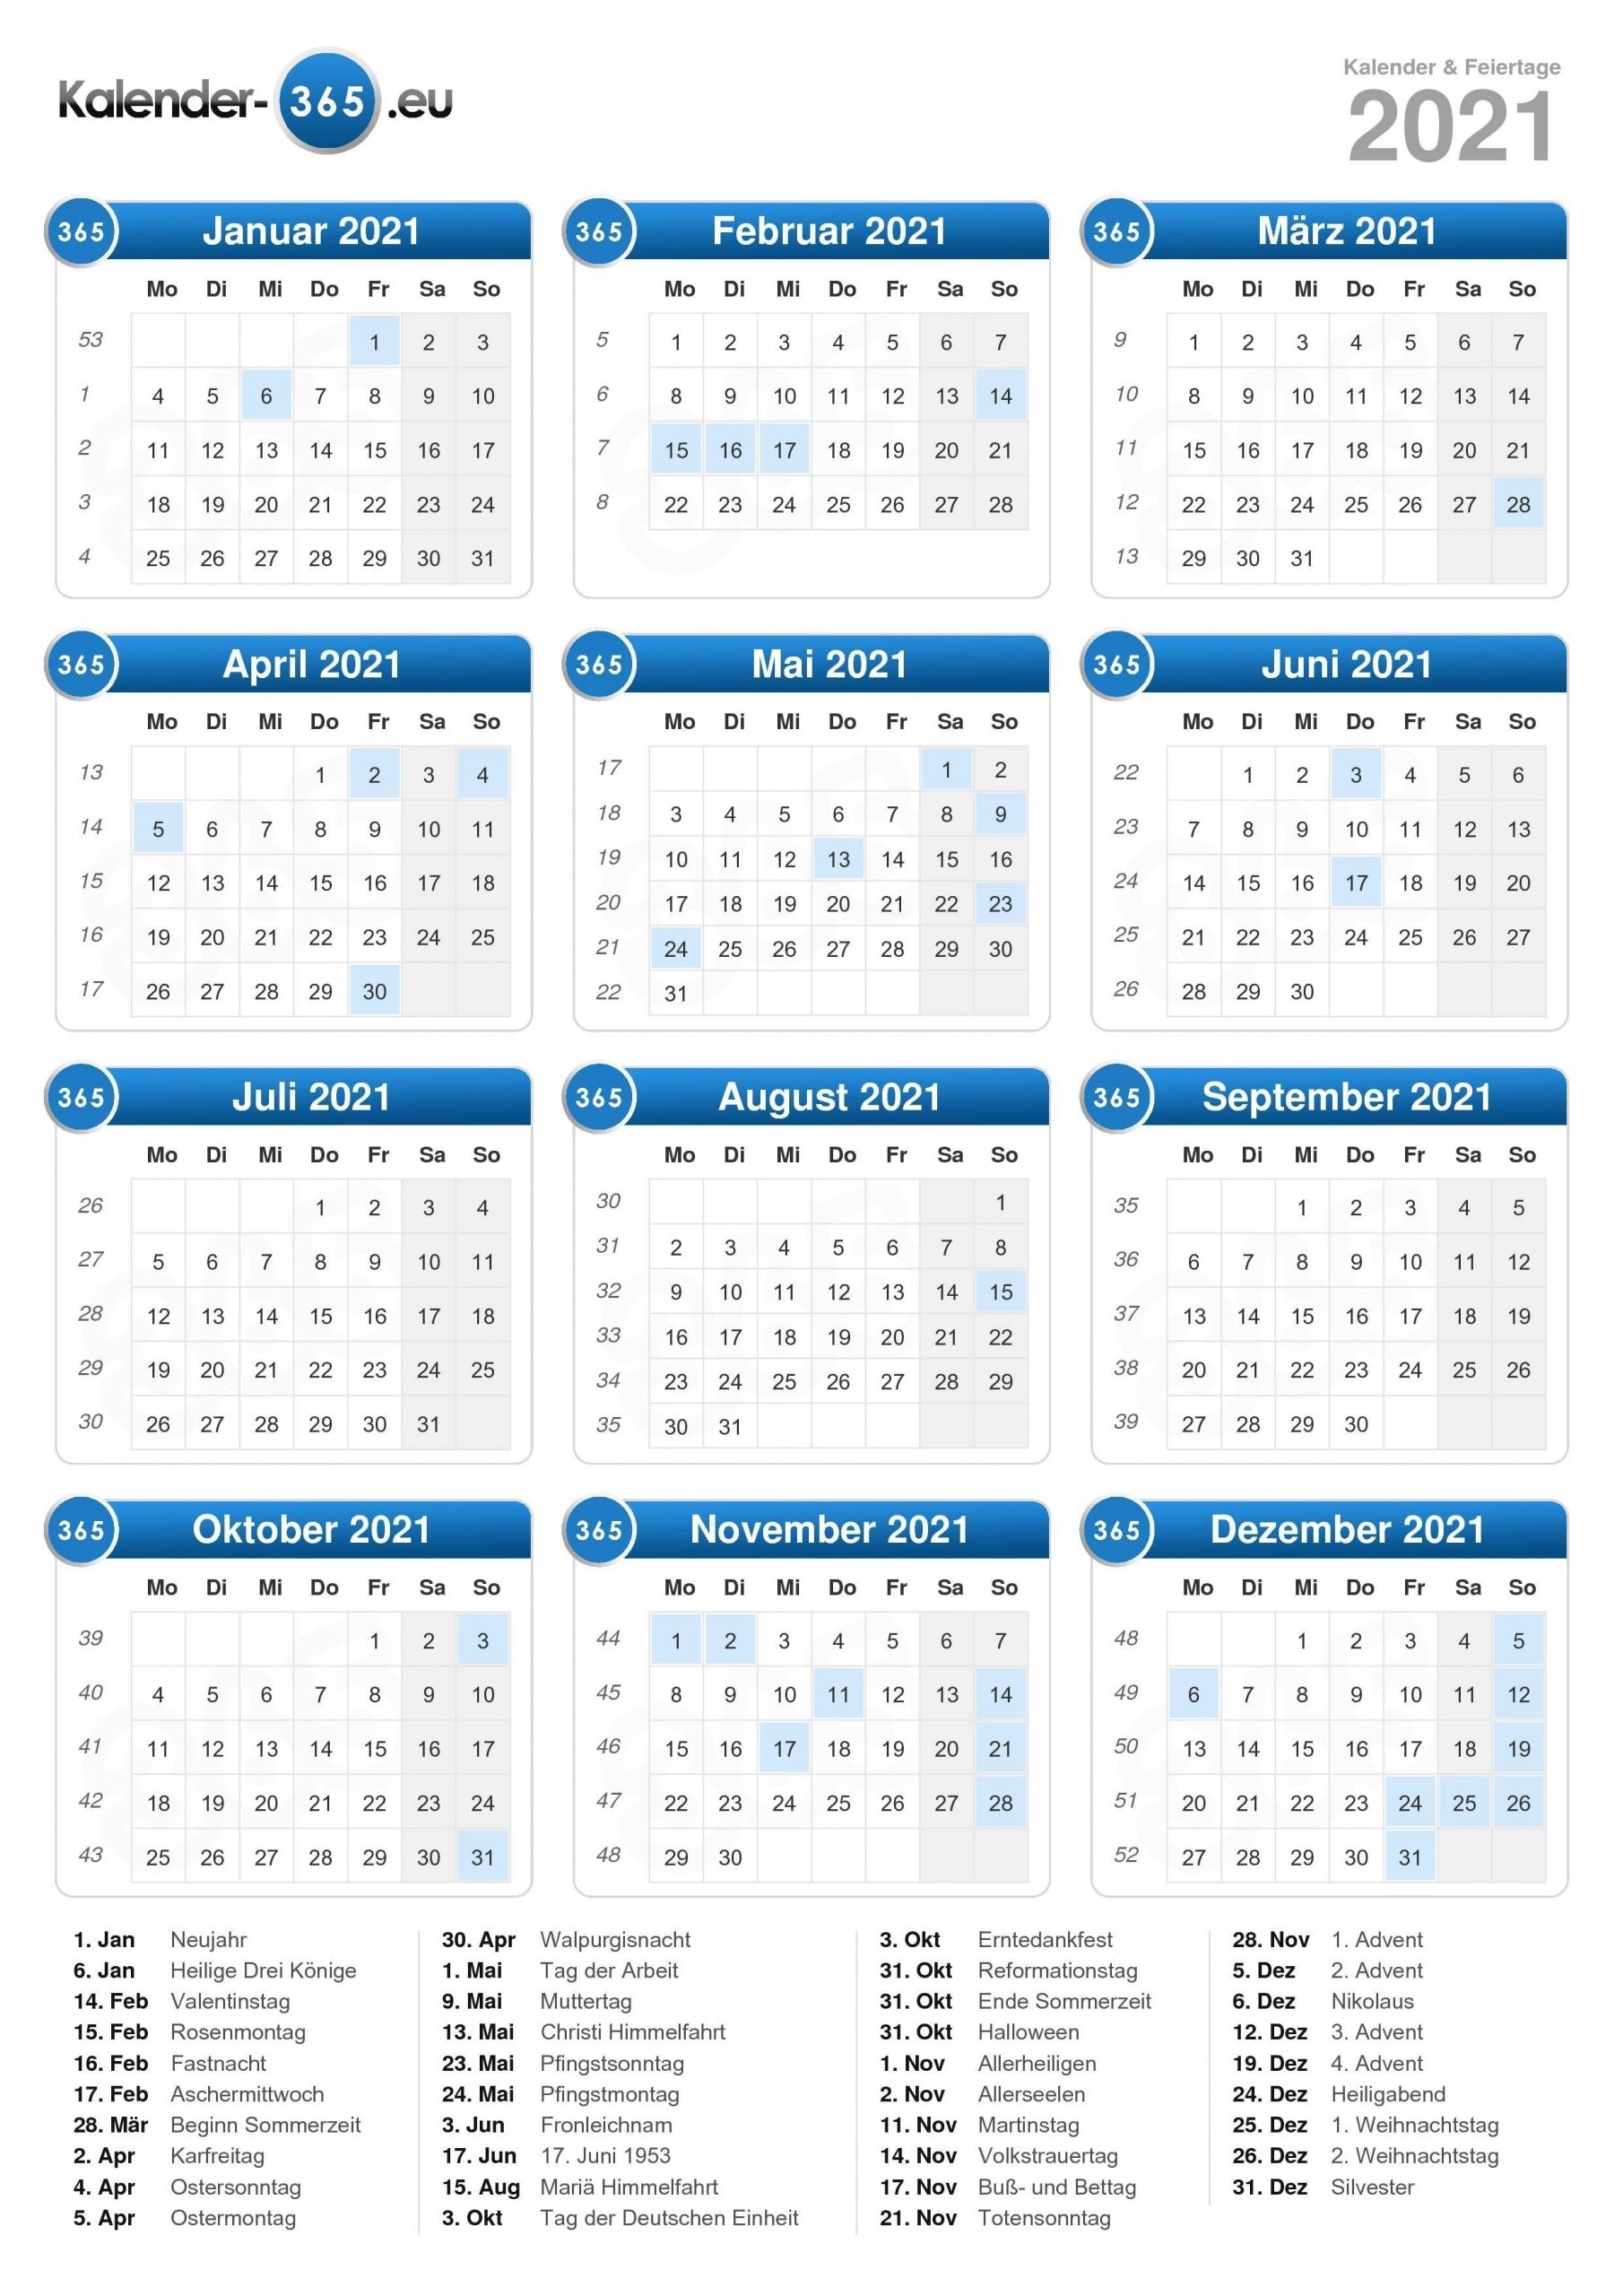 Get Kalender 2021 Deutsch Zum Ausdrucken